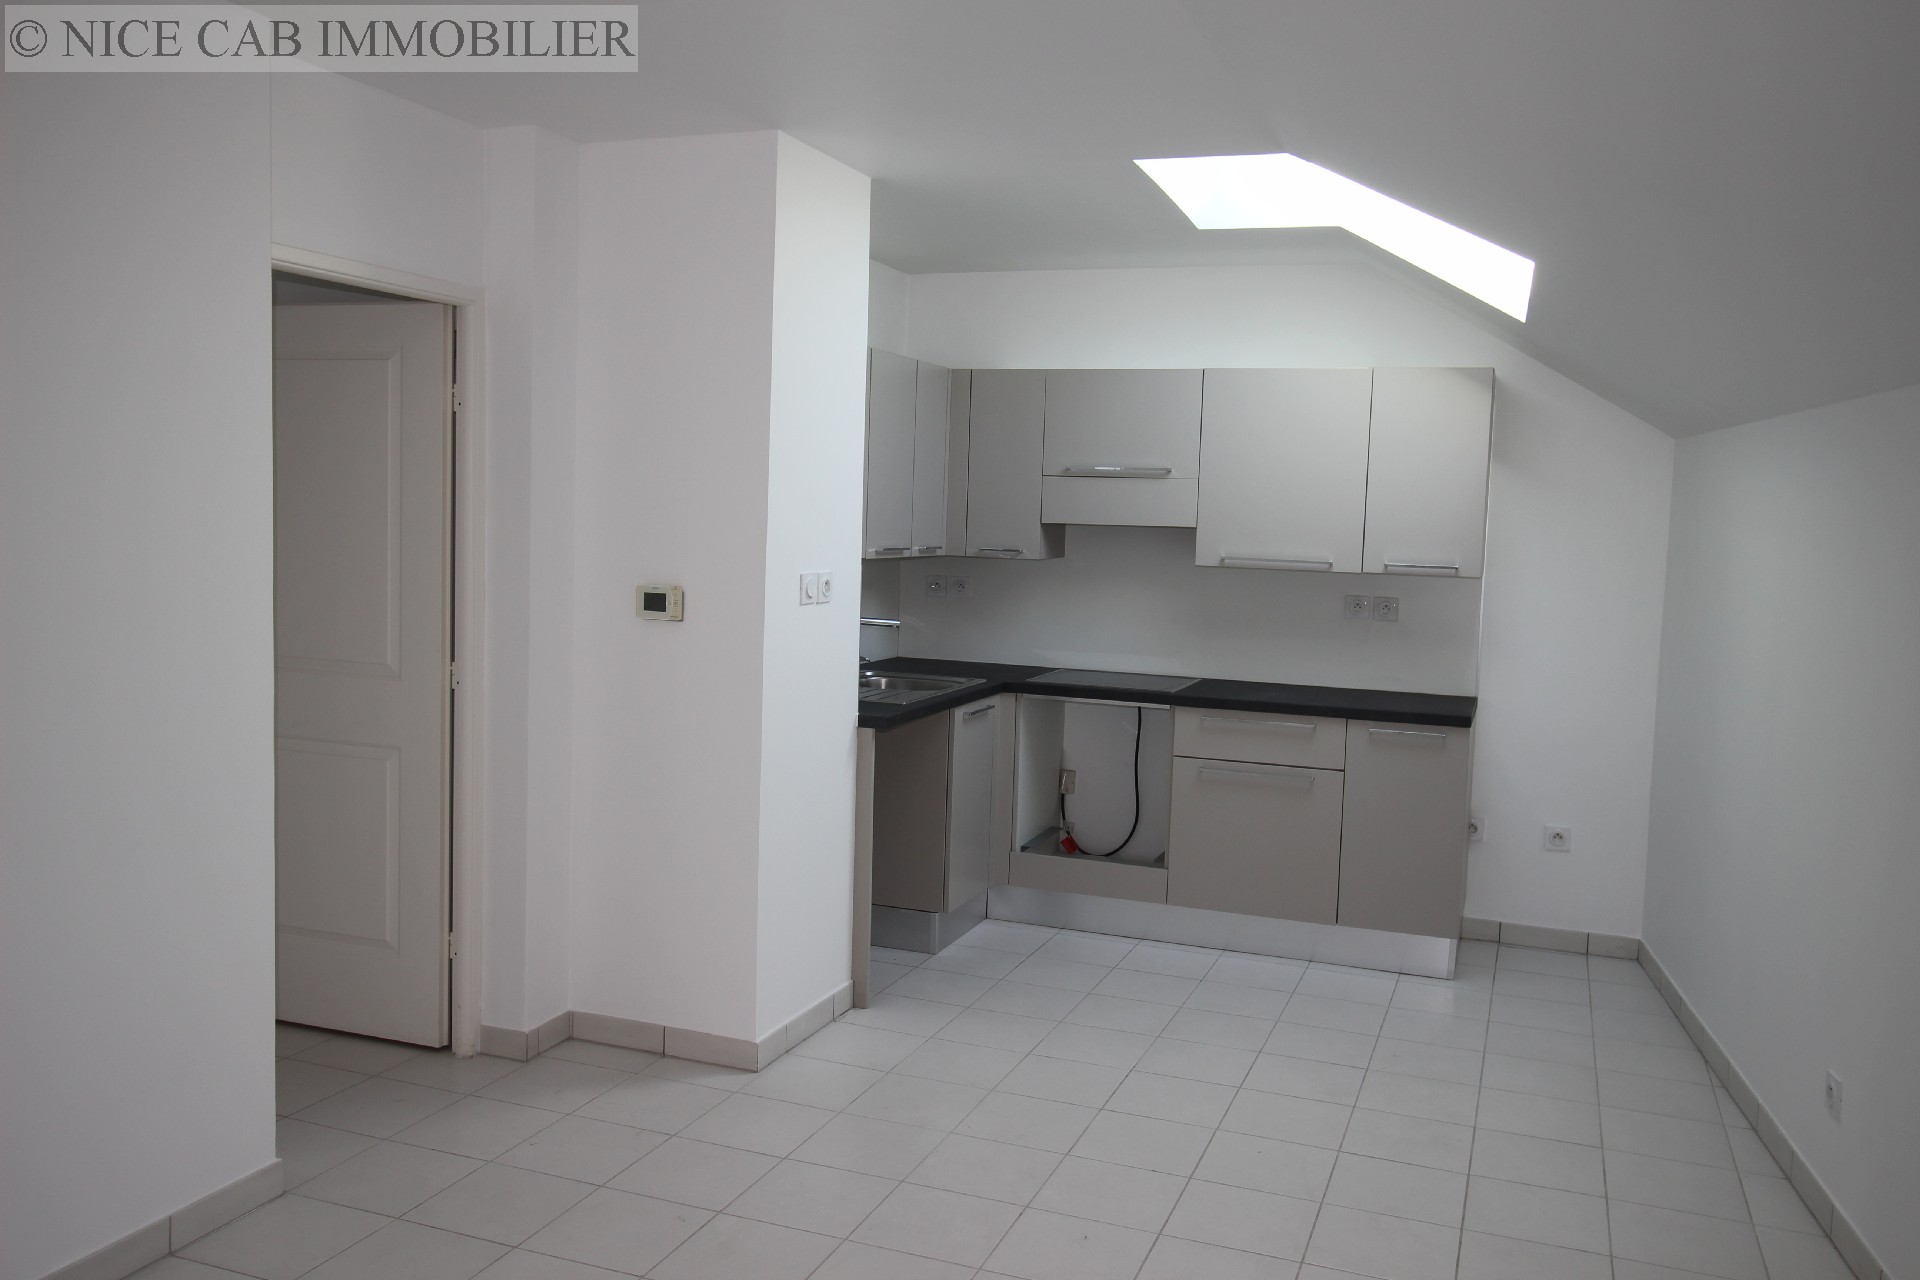 Appartement à vendre, A 200 M DU COEUR DU QUARTIER DE LA LIBERATION, 45 m², 2 pièces